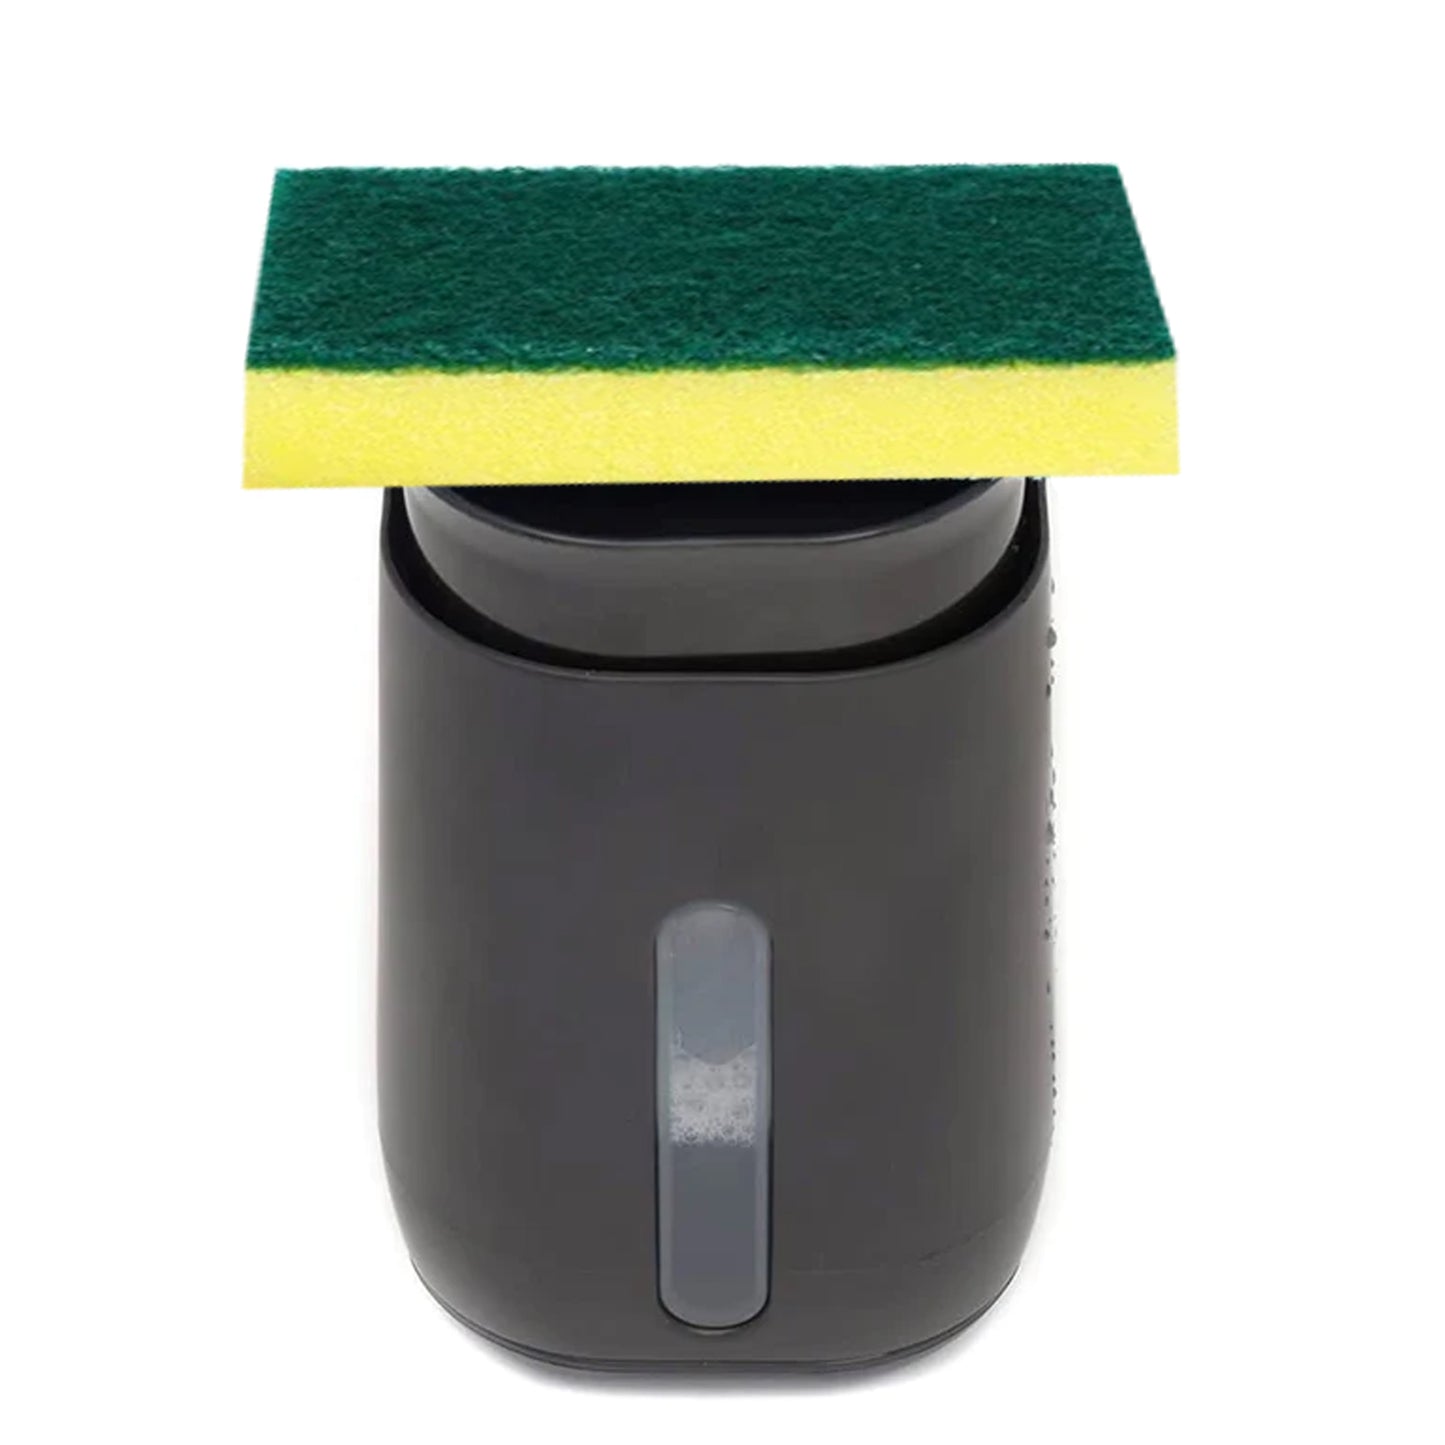 Soap Dispenser with sponge holder